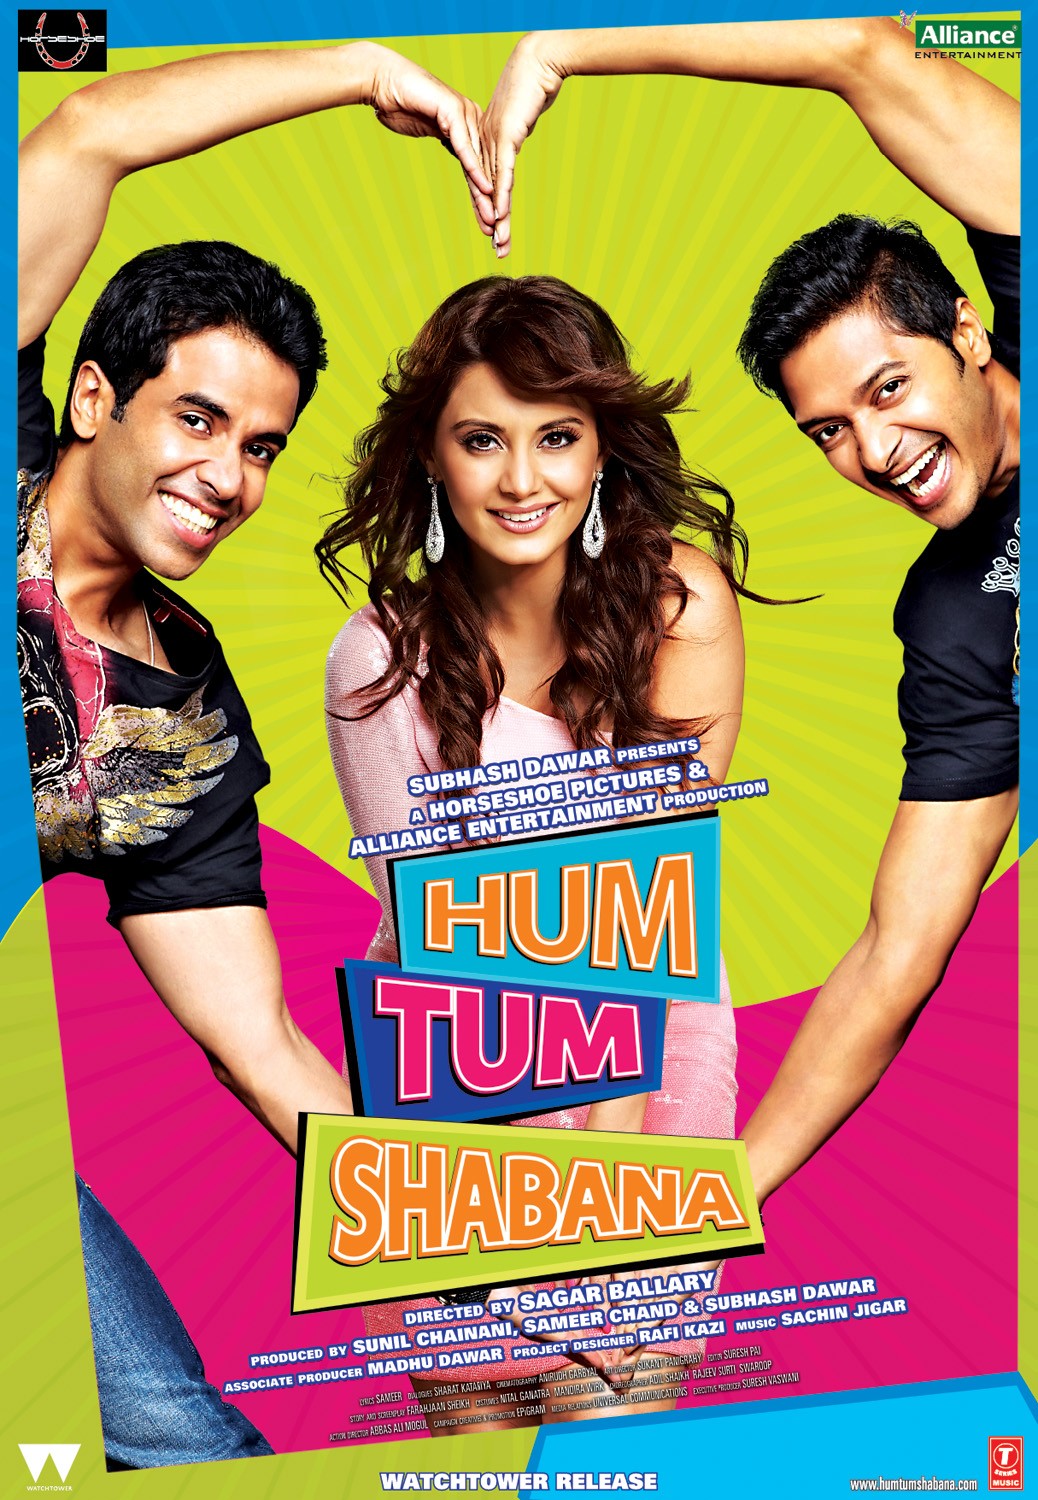 Extra Large Movie Poster Image for Hum Tum Shabana (#4 of 7)